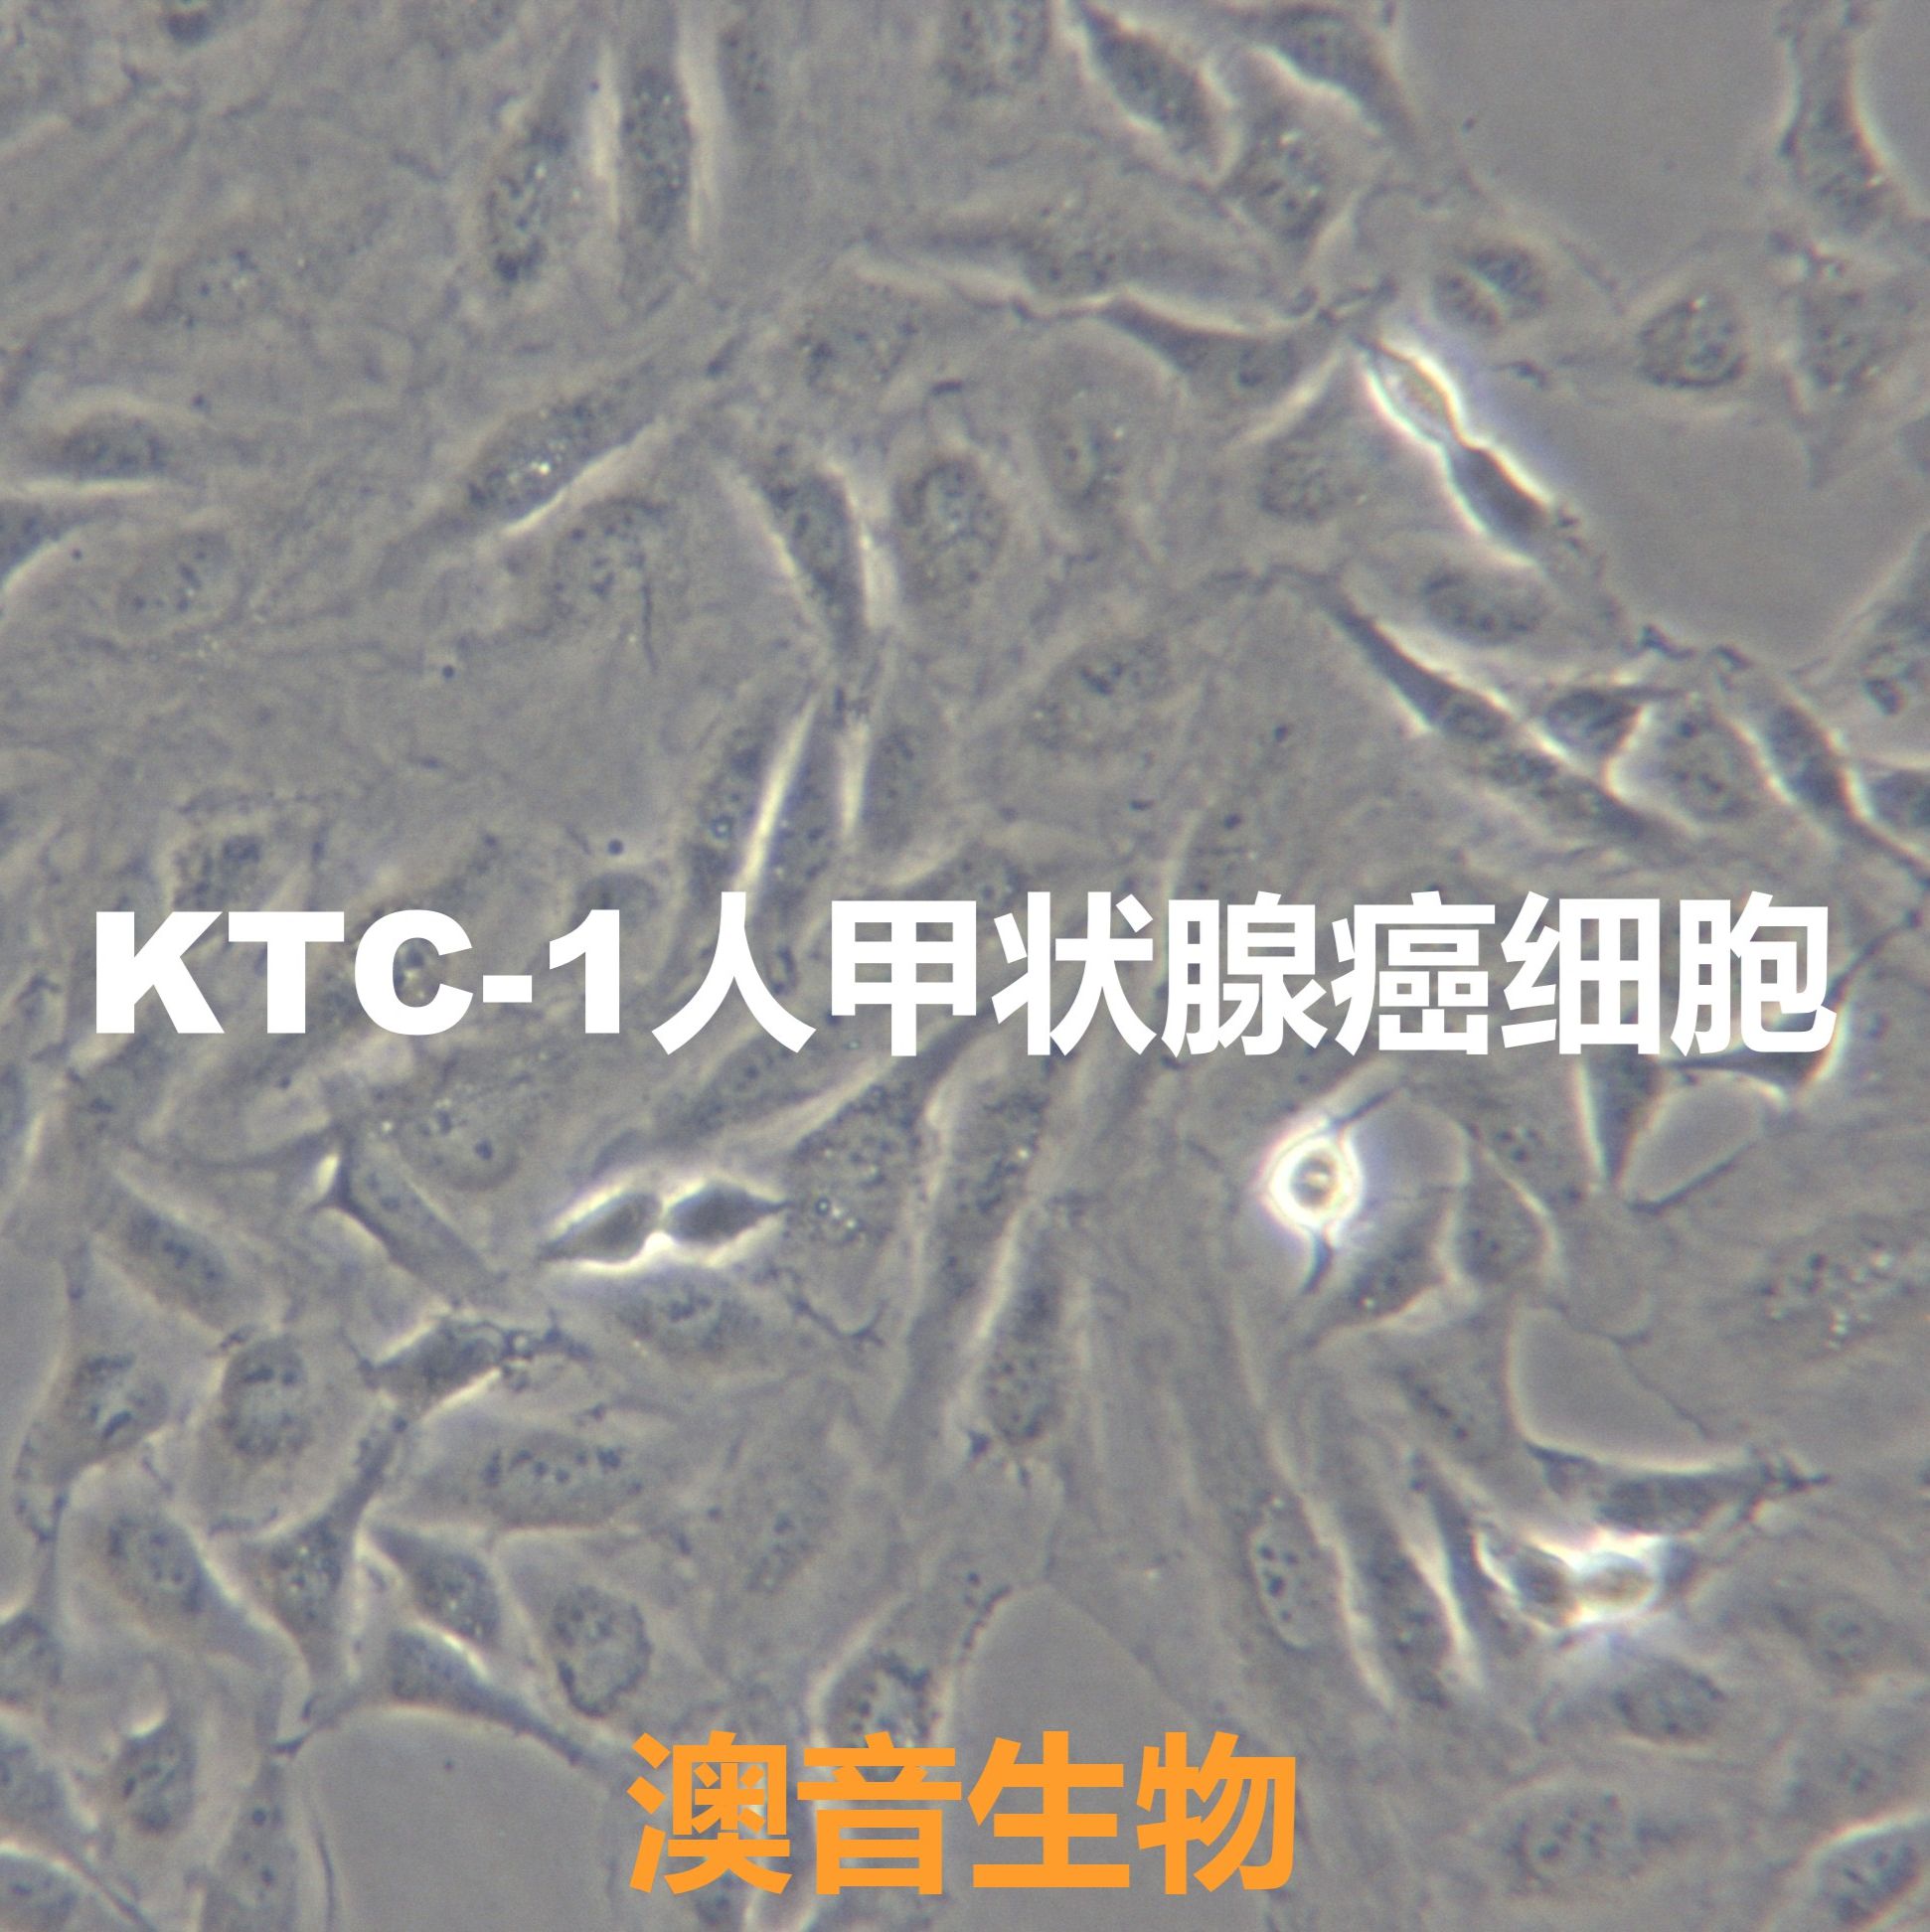 KTC-1【KTC1】人甲状腺癌细胞